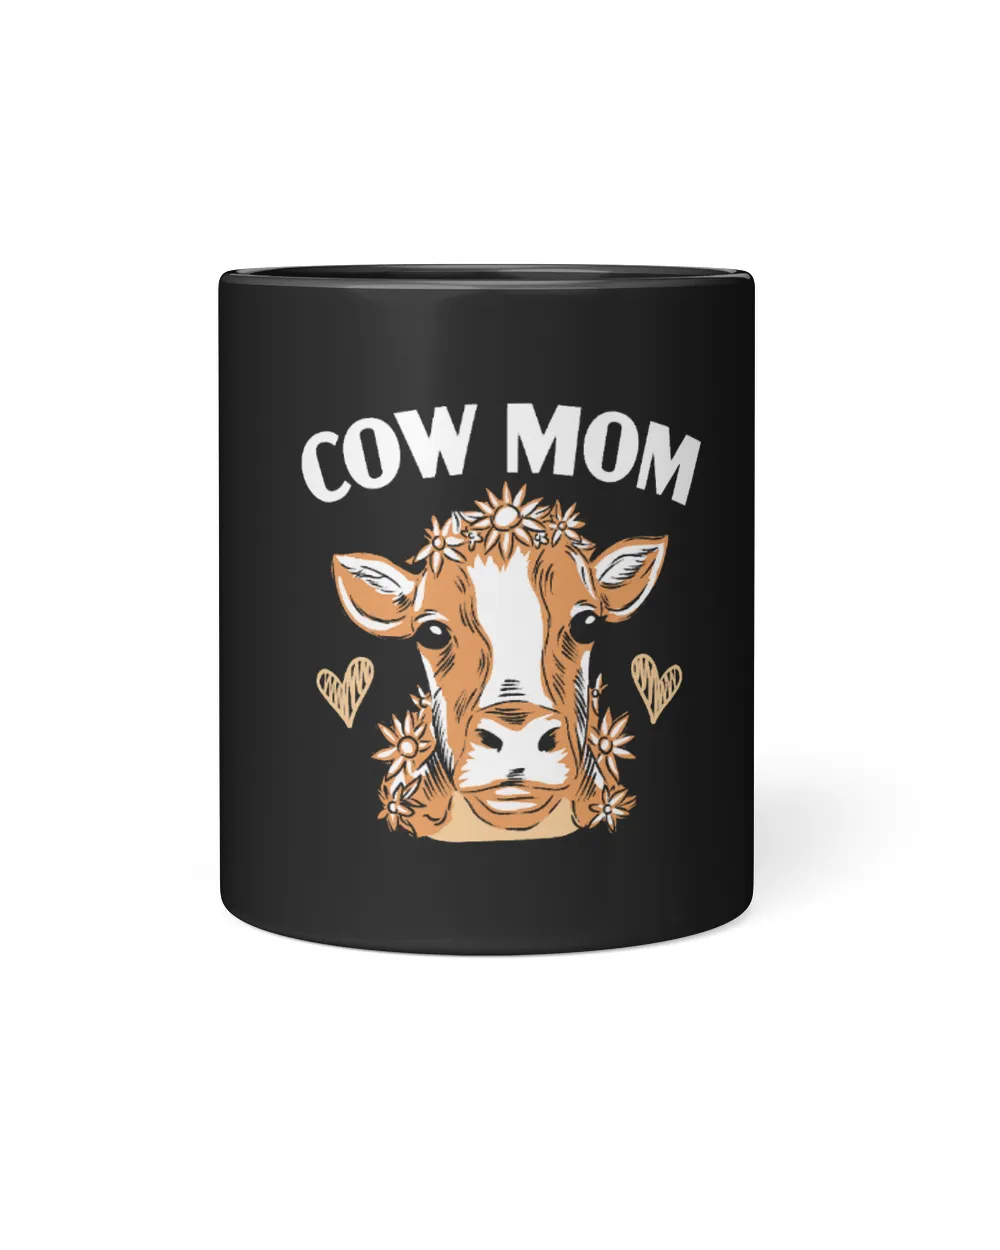 Cow Mom Heifer Cow Whisperer Cow Farming Animal Farmer Farm Mooey Heifer